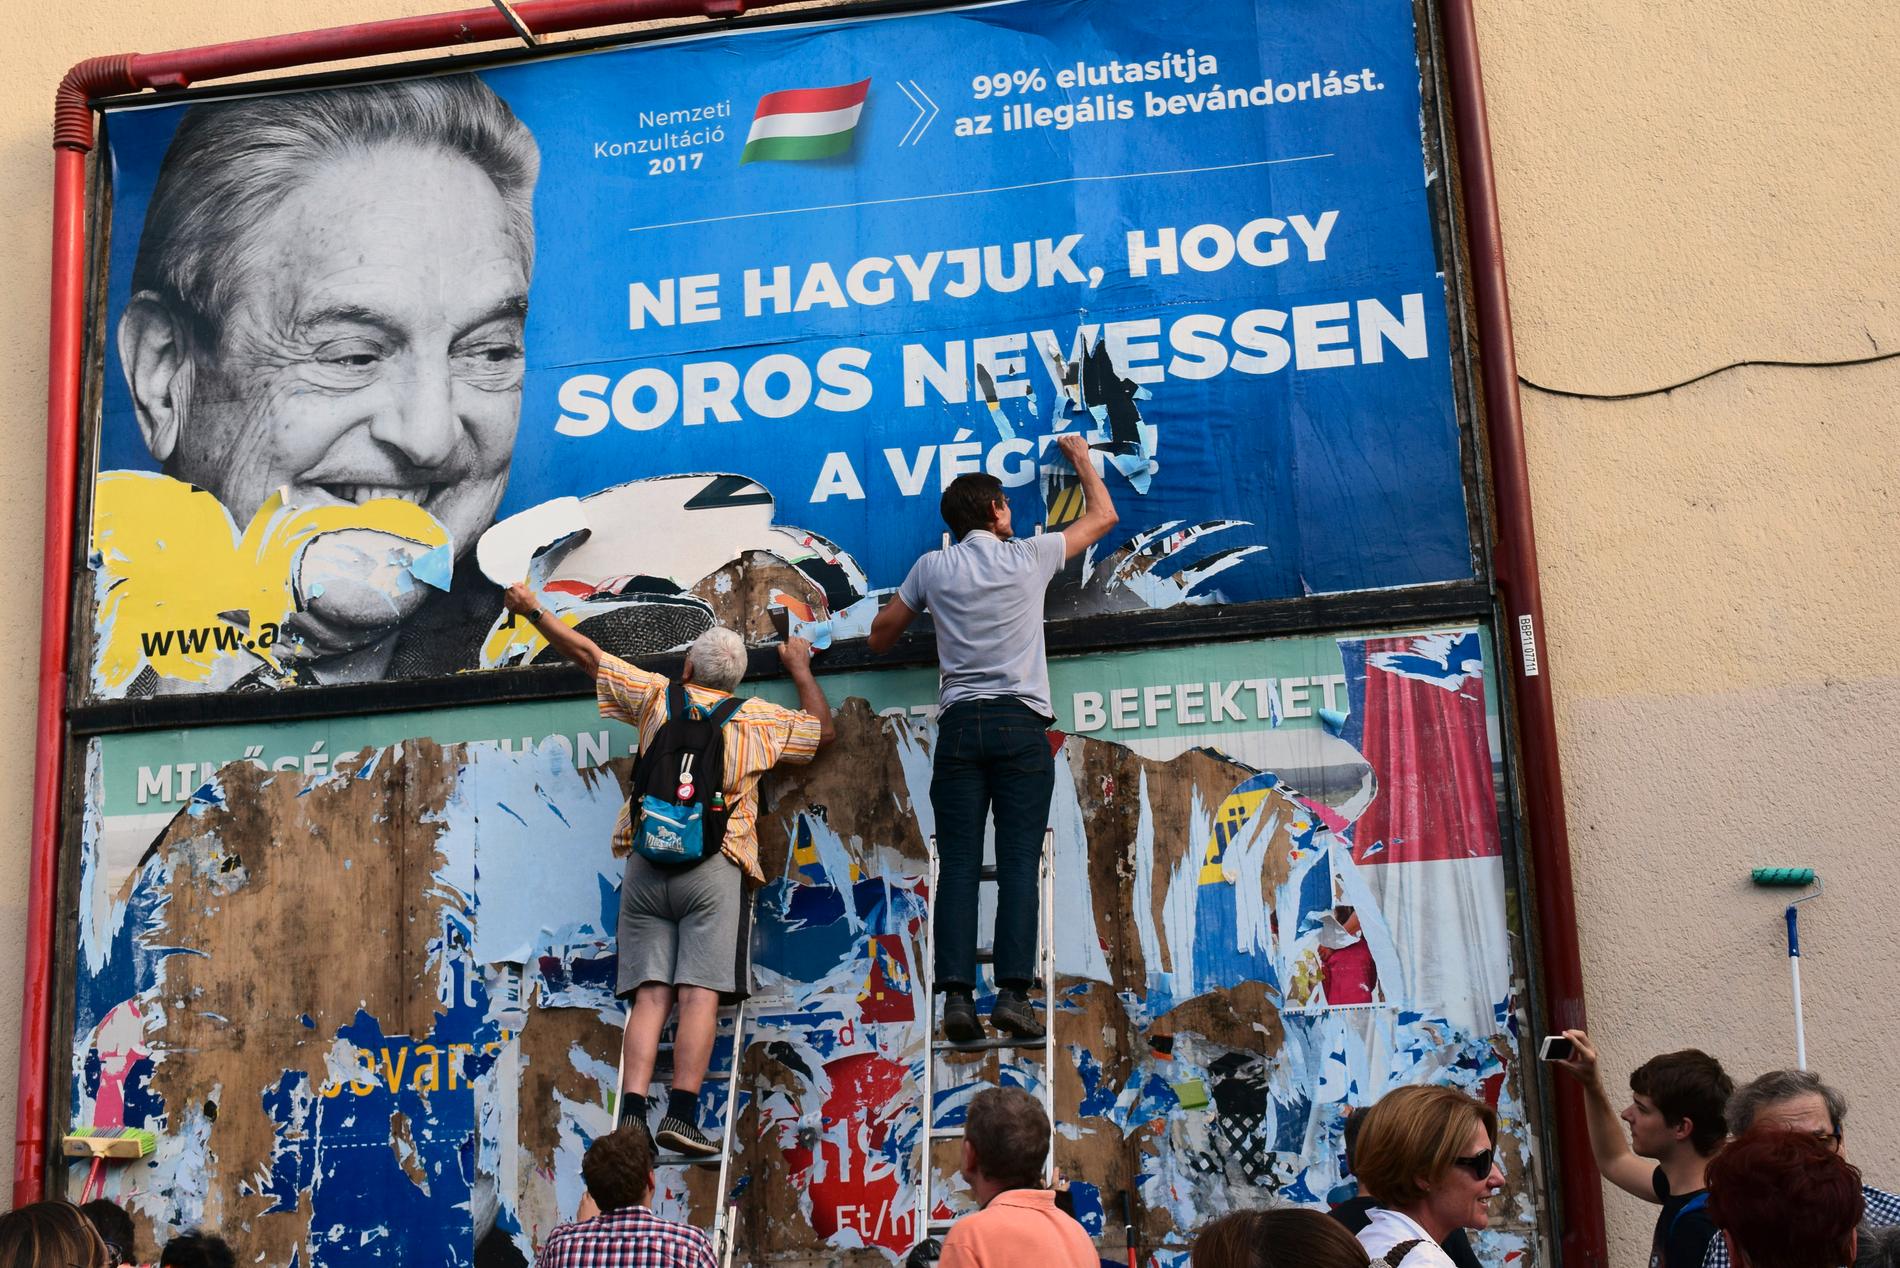 Den ungerska regeringen byggde en stor del av sin valkampanj på att hetsa mot George Soros.